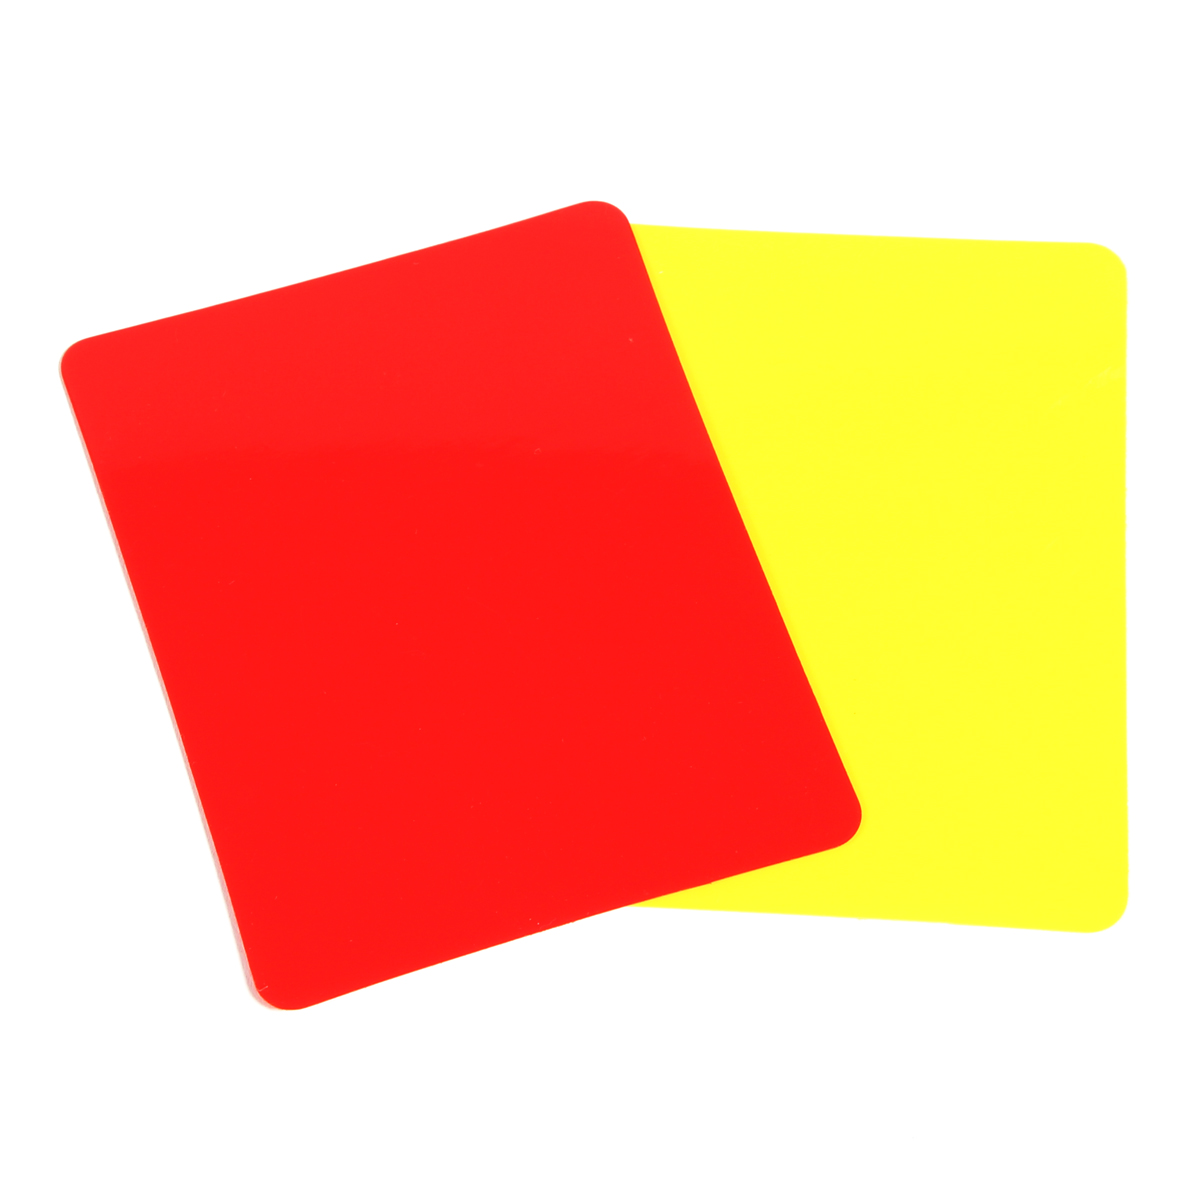 Cartões De Arbitragem Em Pvc (conjunto De 2, 1 Vermelho E 1 Amarelo)